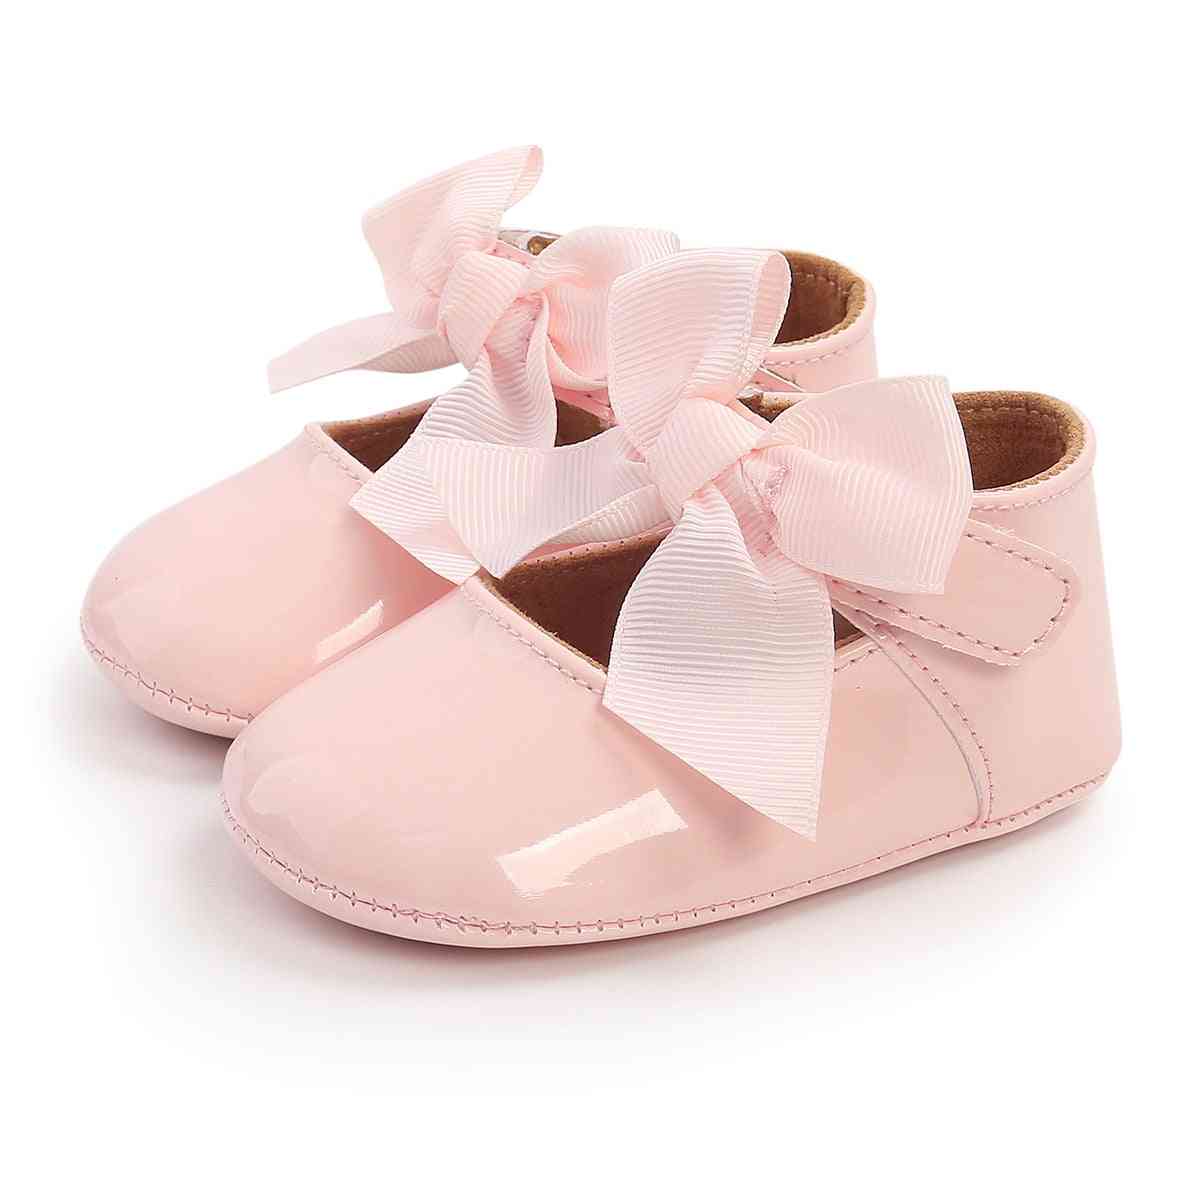 Zapatos de bautizo niña princesa suela blanda, zapatos planos con lazo de cinta lindo, antideslizante - a / 0-6 meses